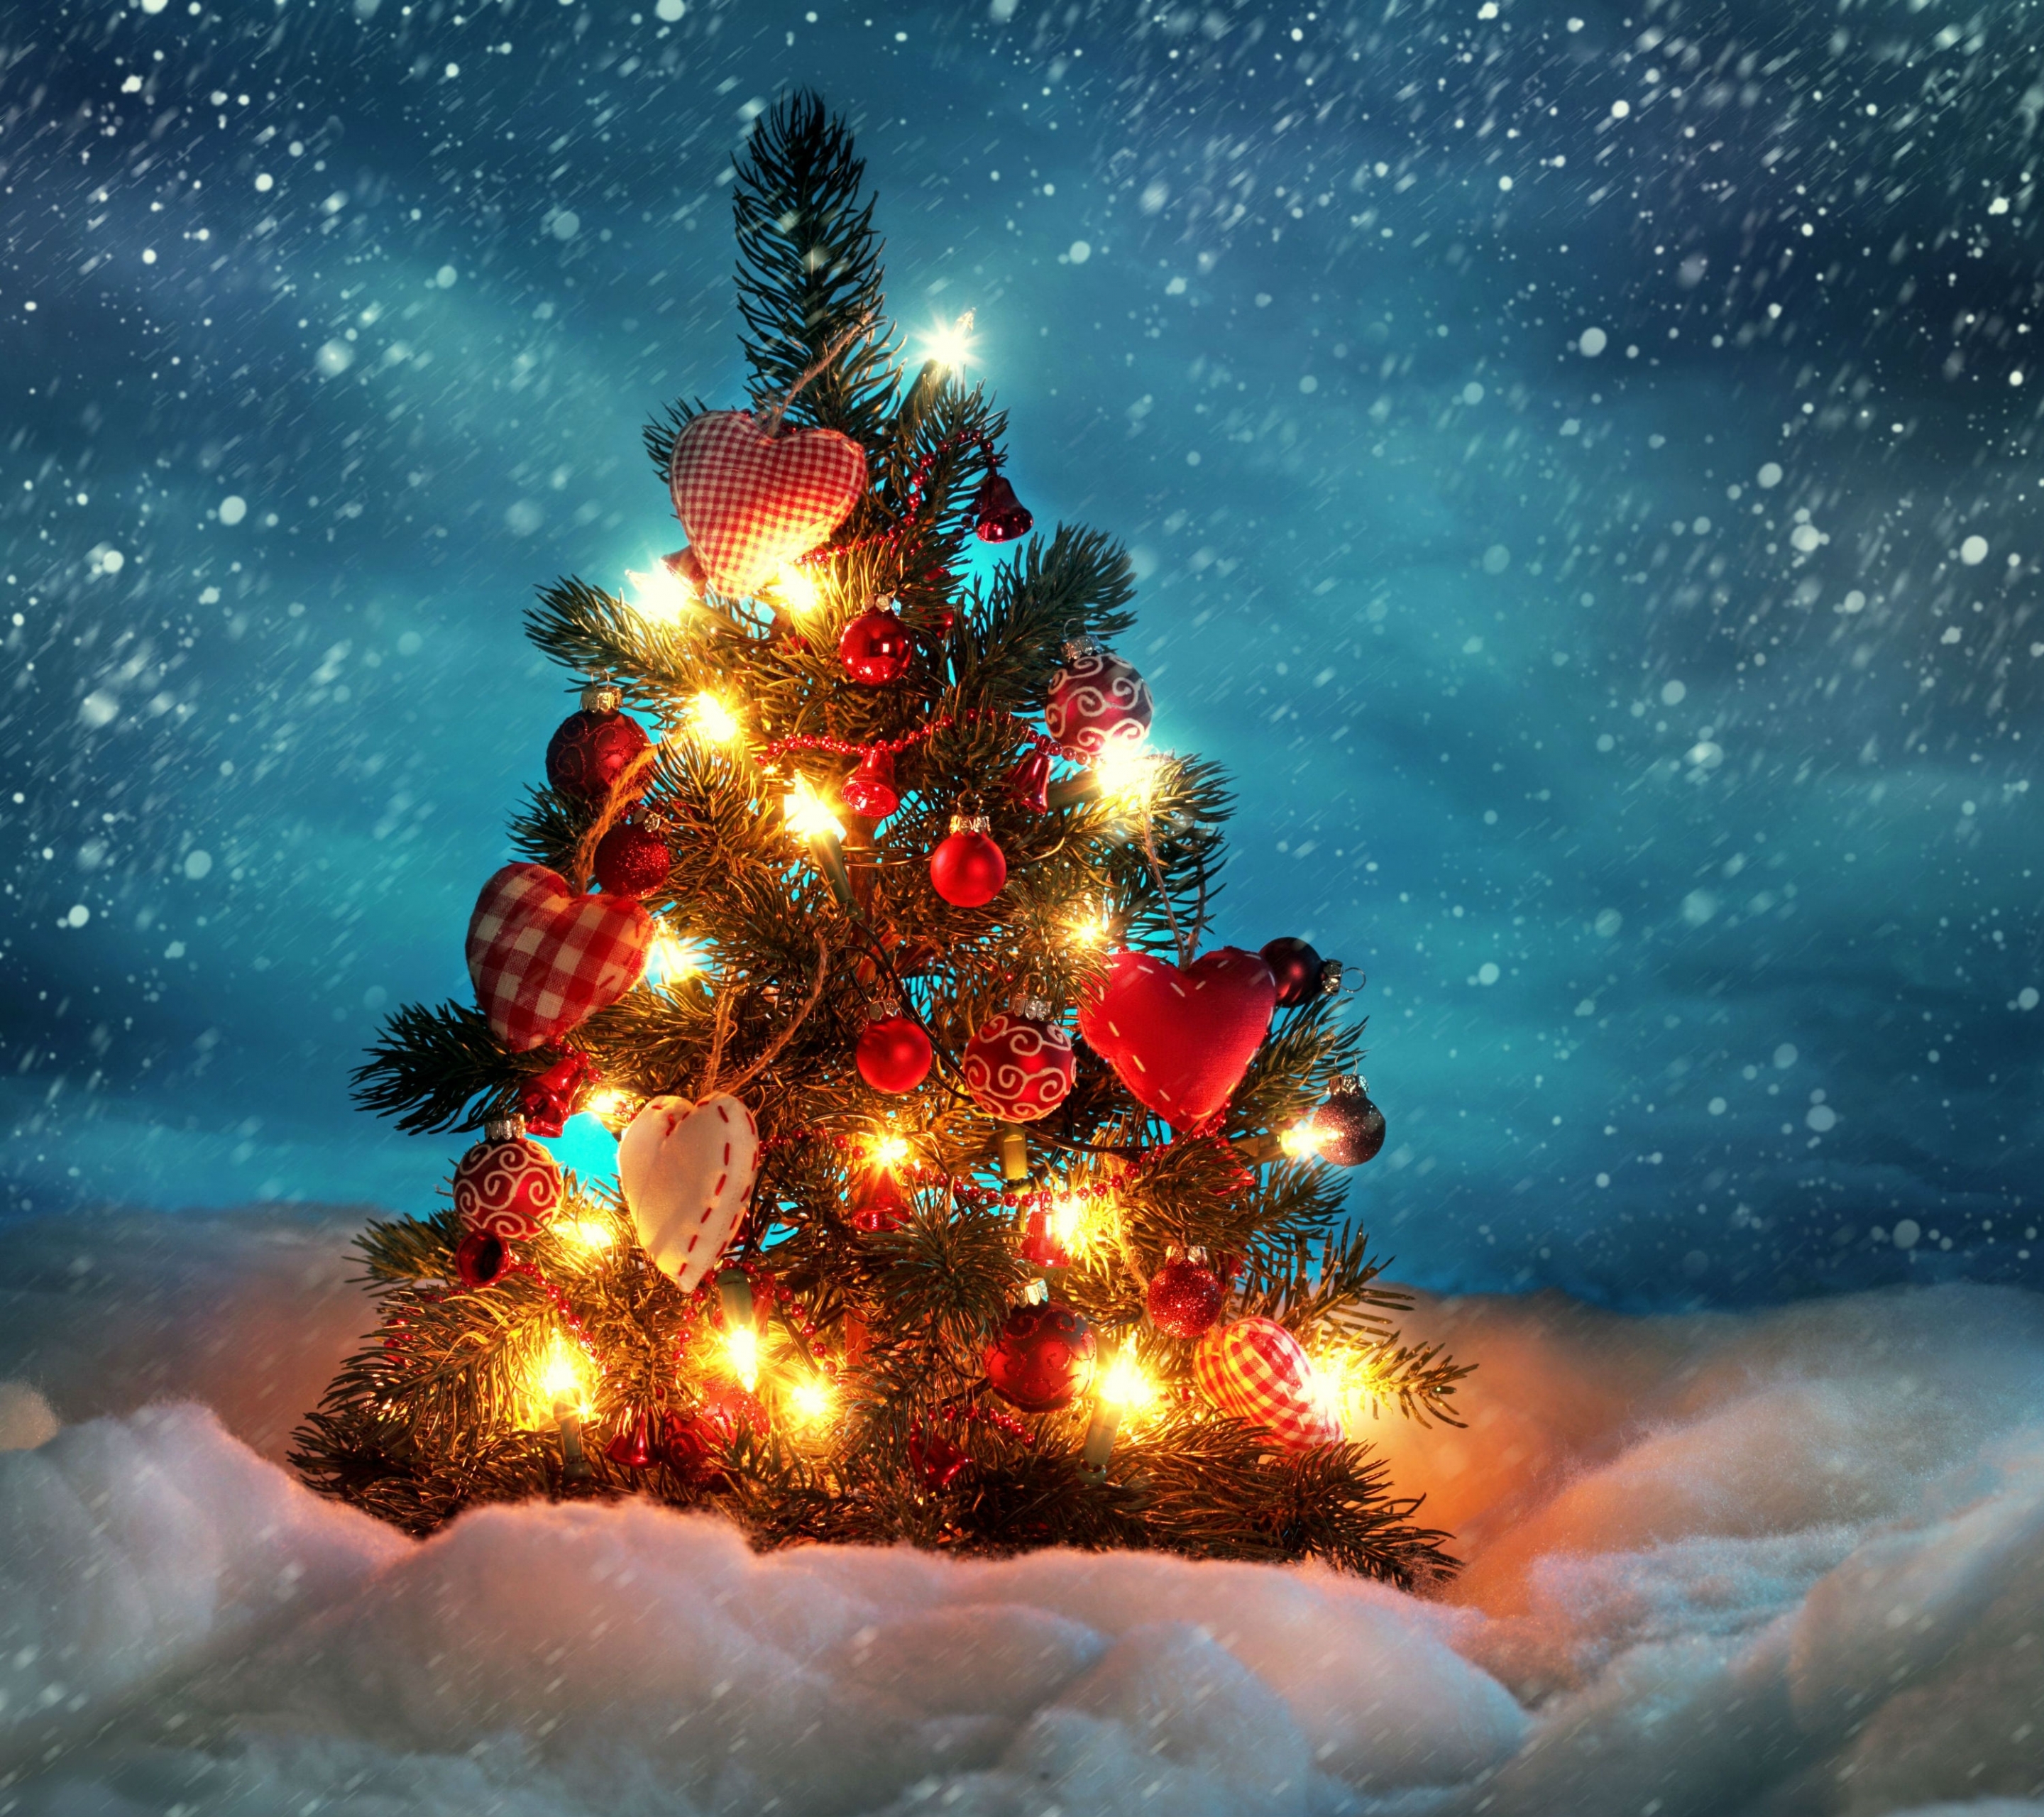 Descarga gratuita de fondo de pantalla para móvil de Invierno, Noche, Nieve, Navidad, Día Festivo, Árbol De Navidad, Nevada, Adornos De Navidad, Luces De Navidad.